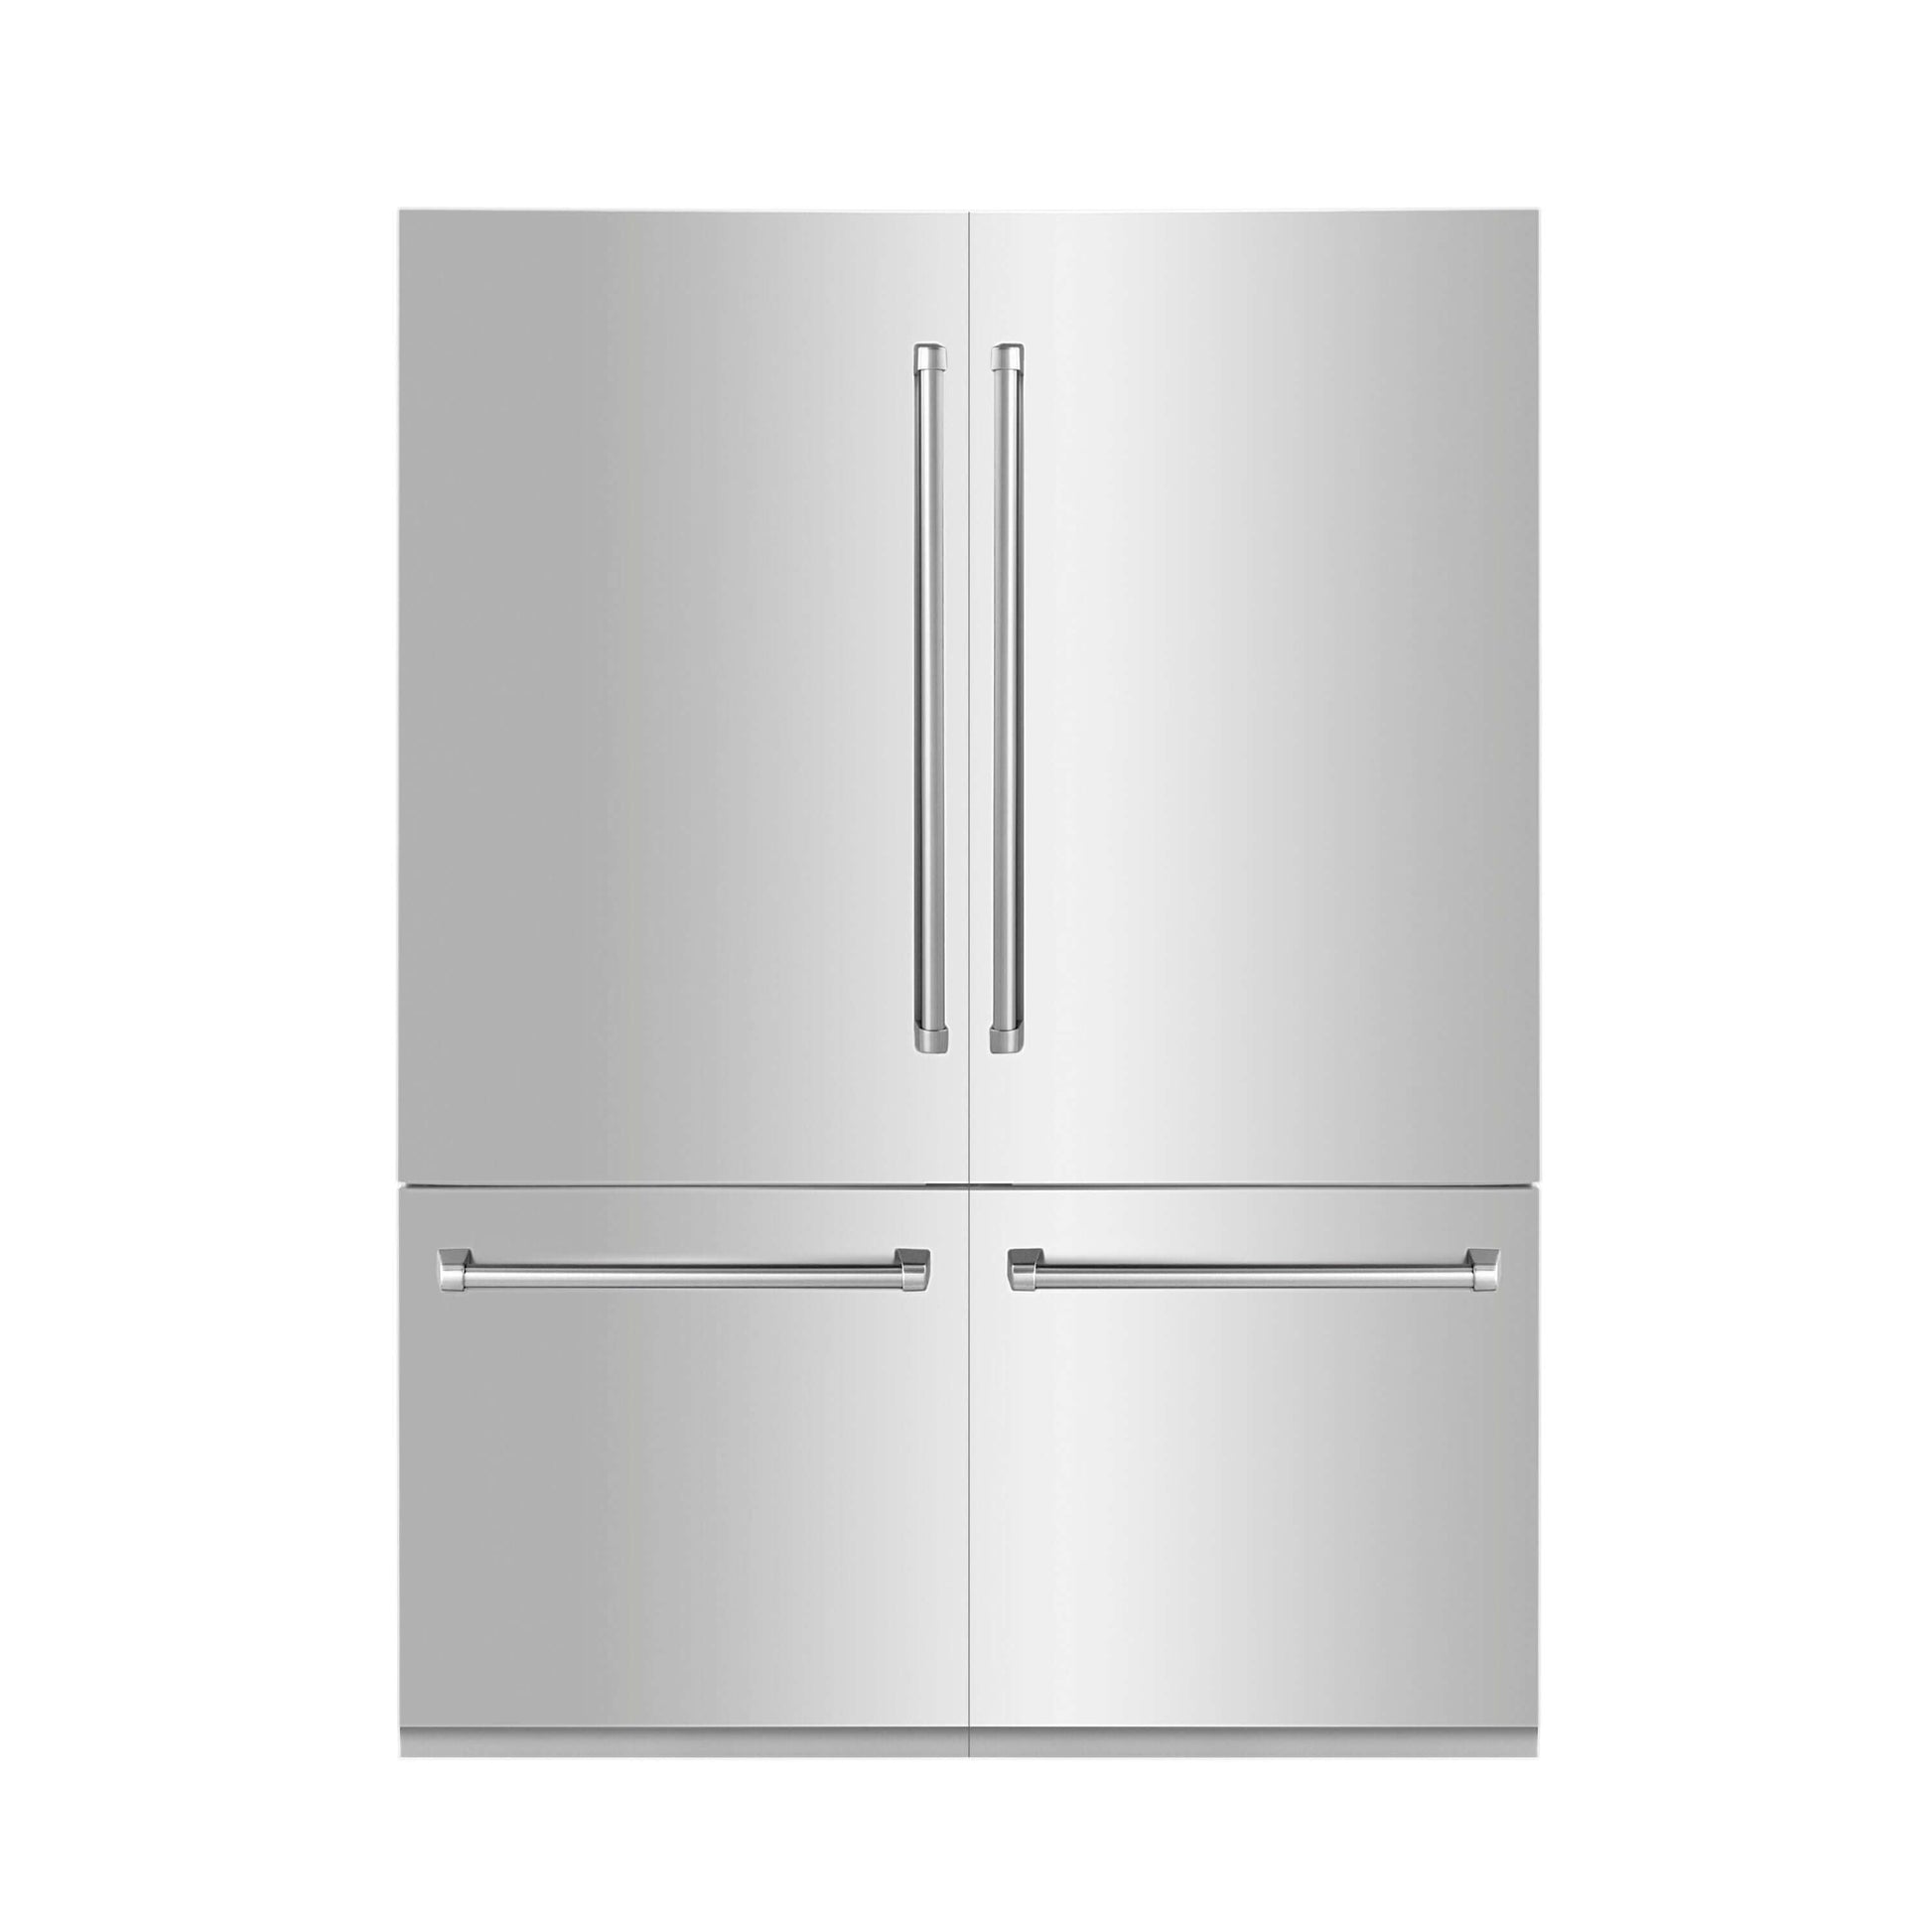 ZLINE 60 in. 32.2 cu. ft. Built-In 4-Door French Door Refrigerator with Internal Water and Ice Dispenser in Stainless Steel (RBIV-304-60) front.